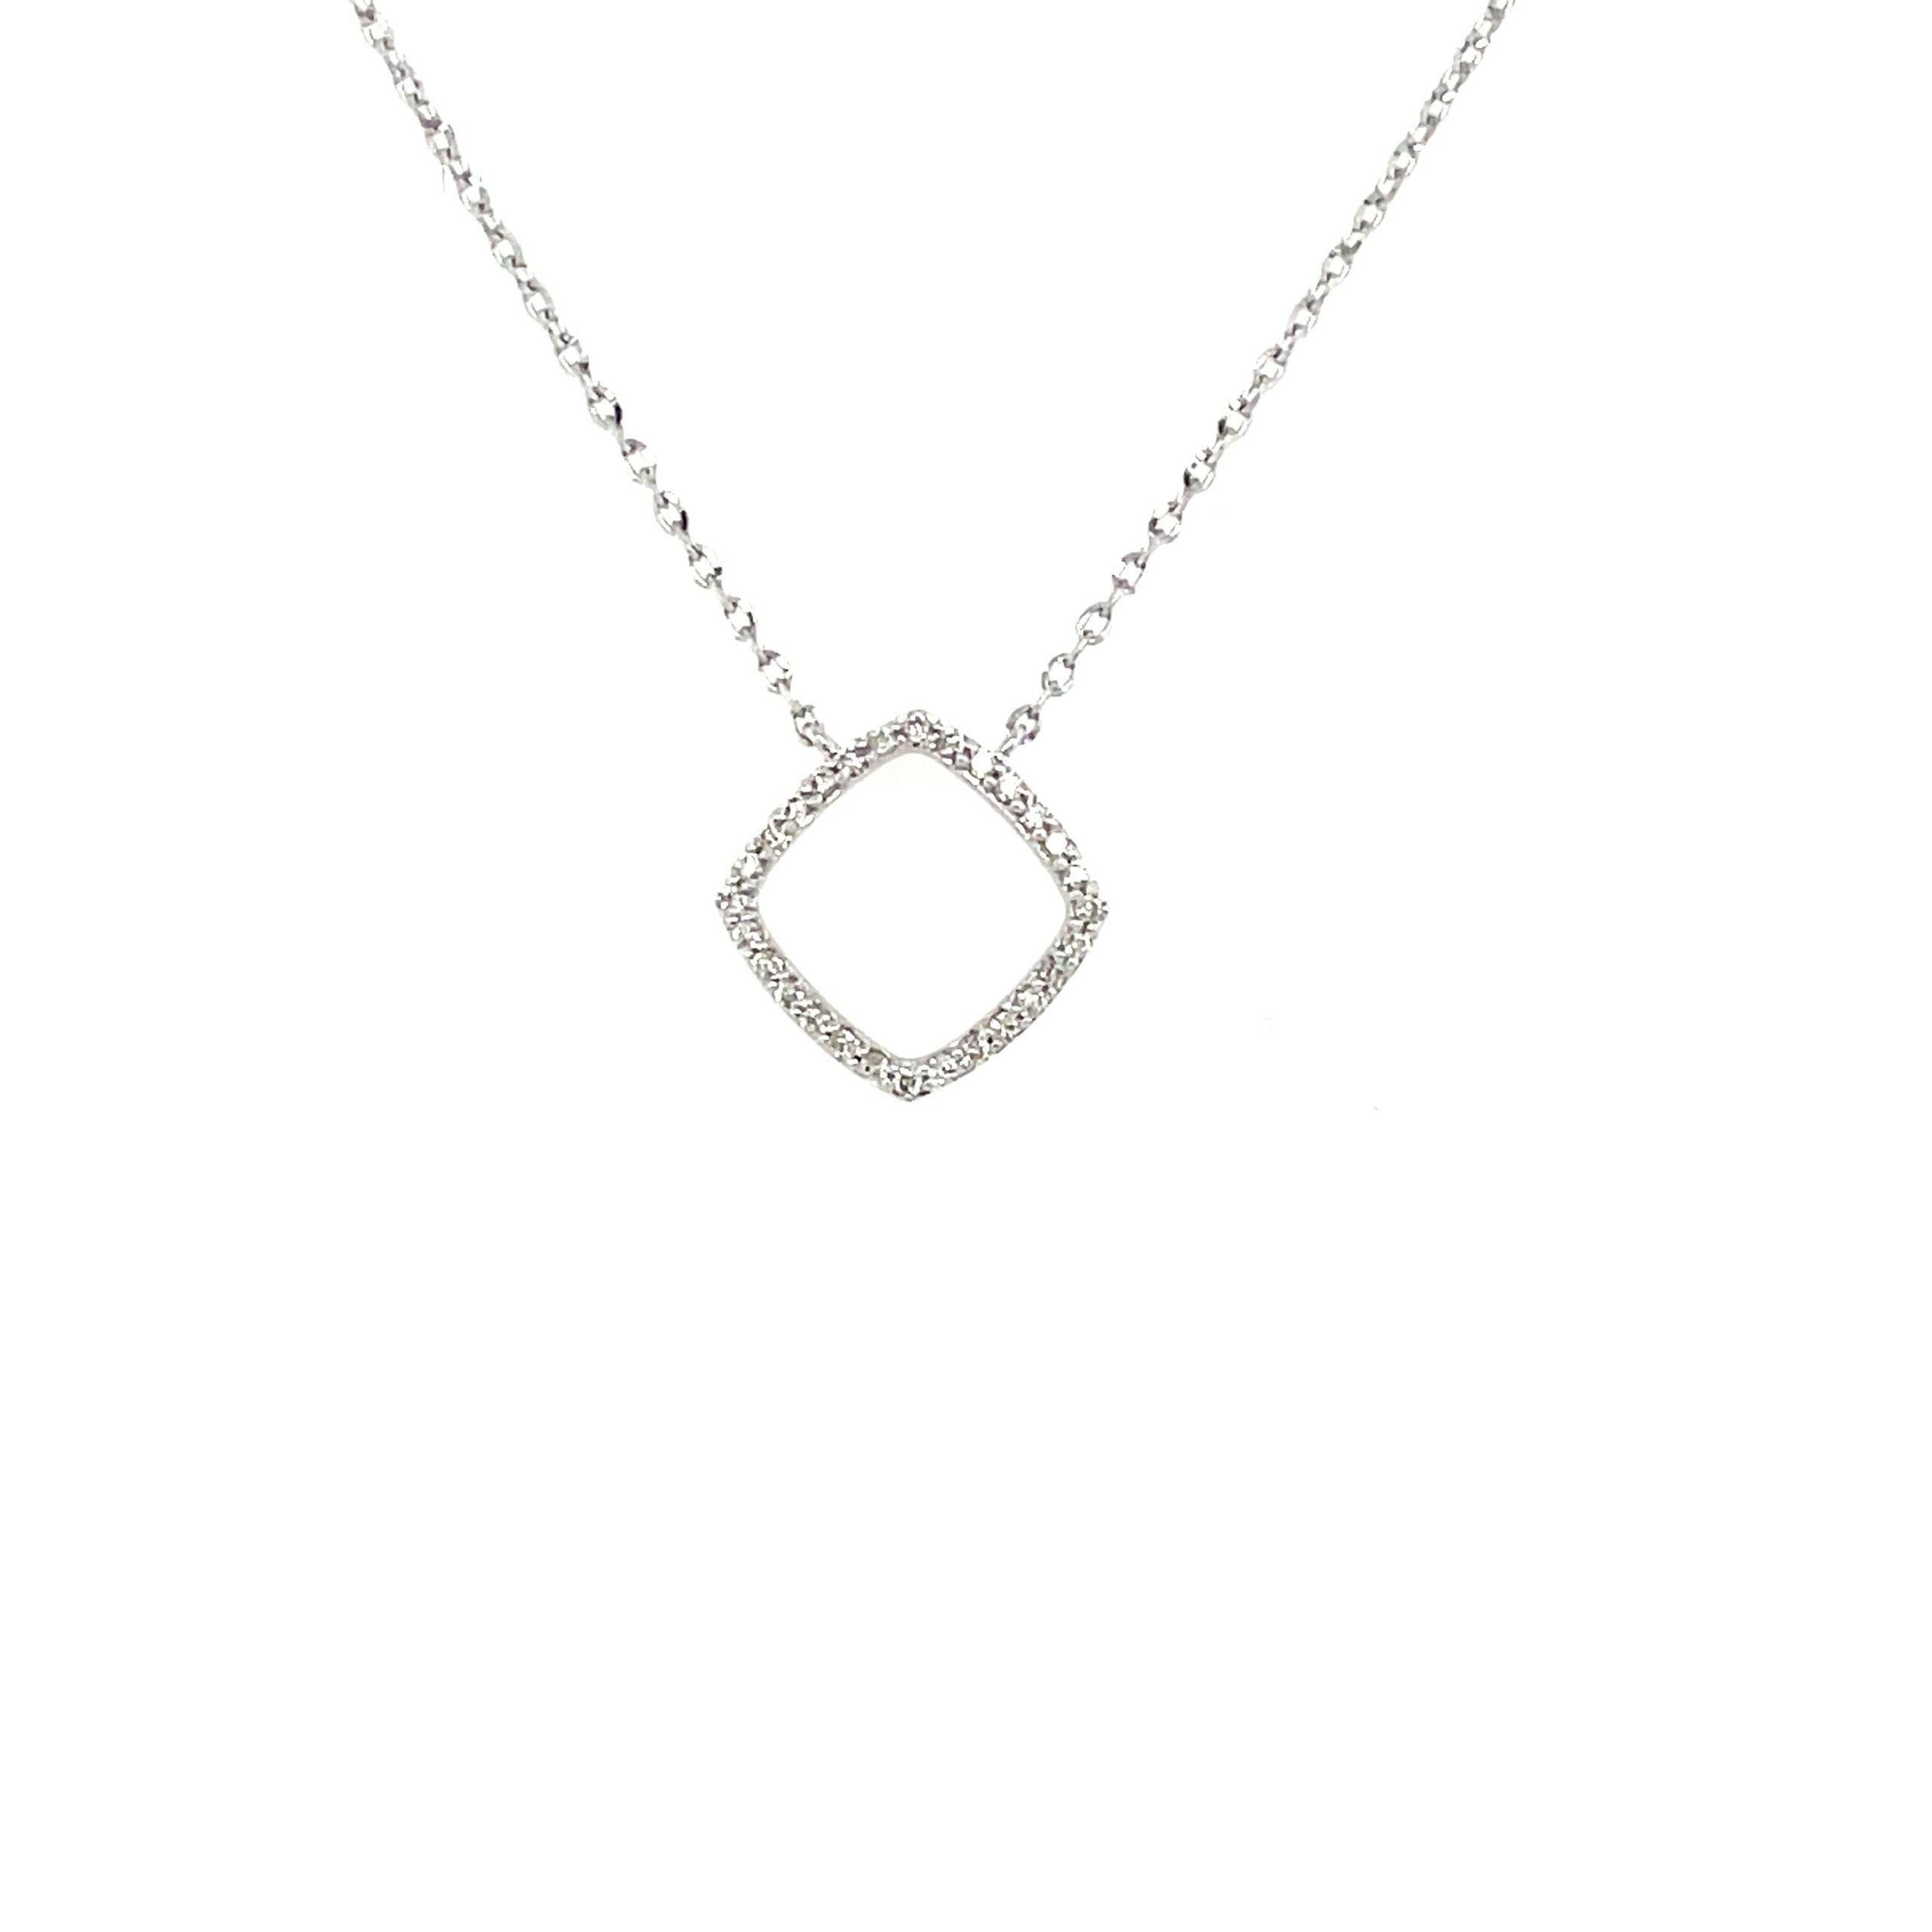 White Gold Open Square Diamond Necklace